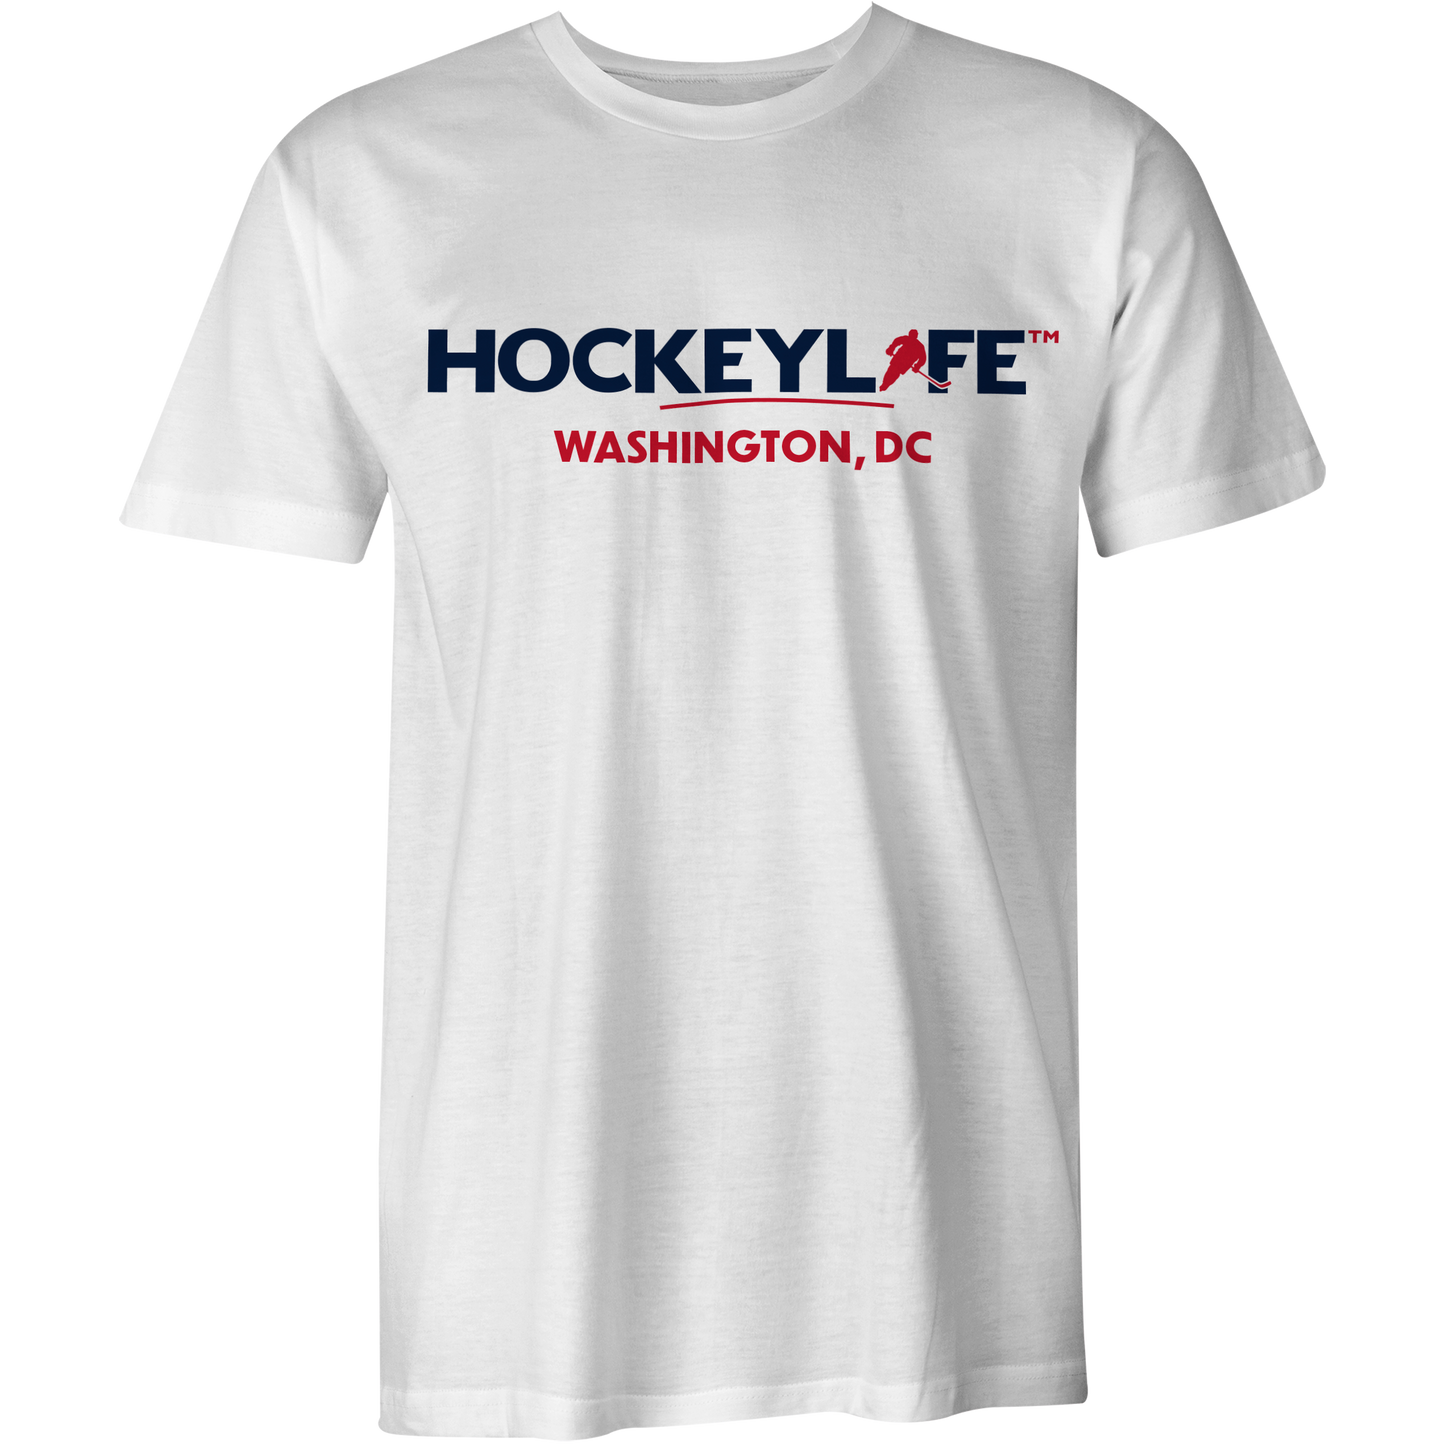 HockeyLife Washington Tee Shirt